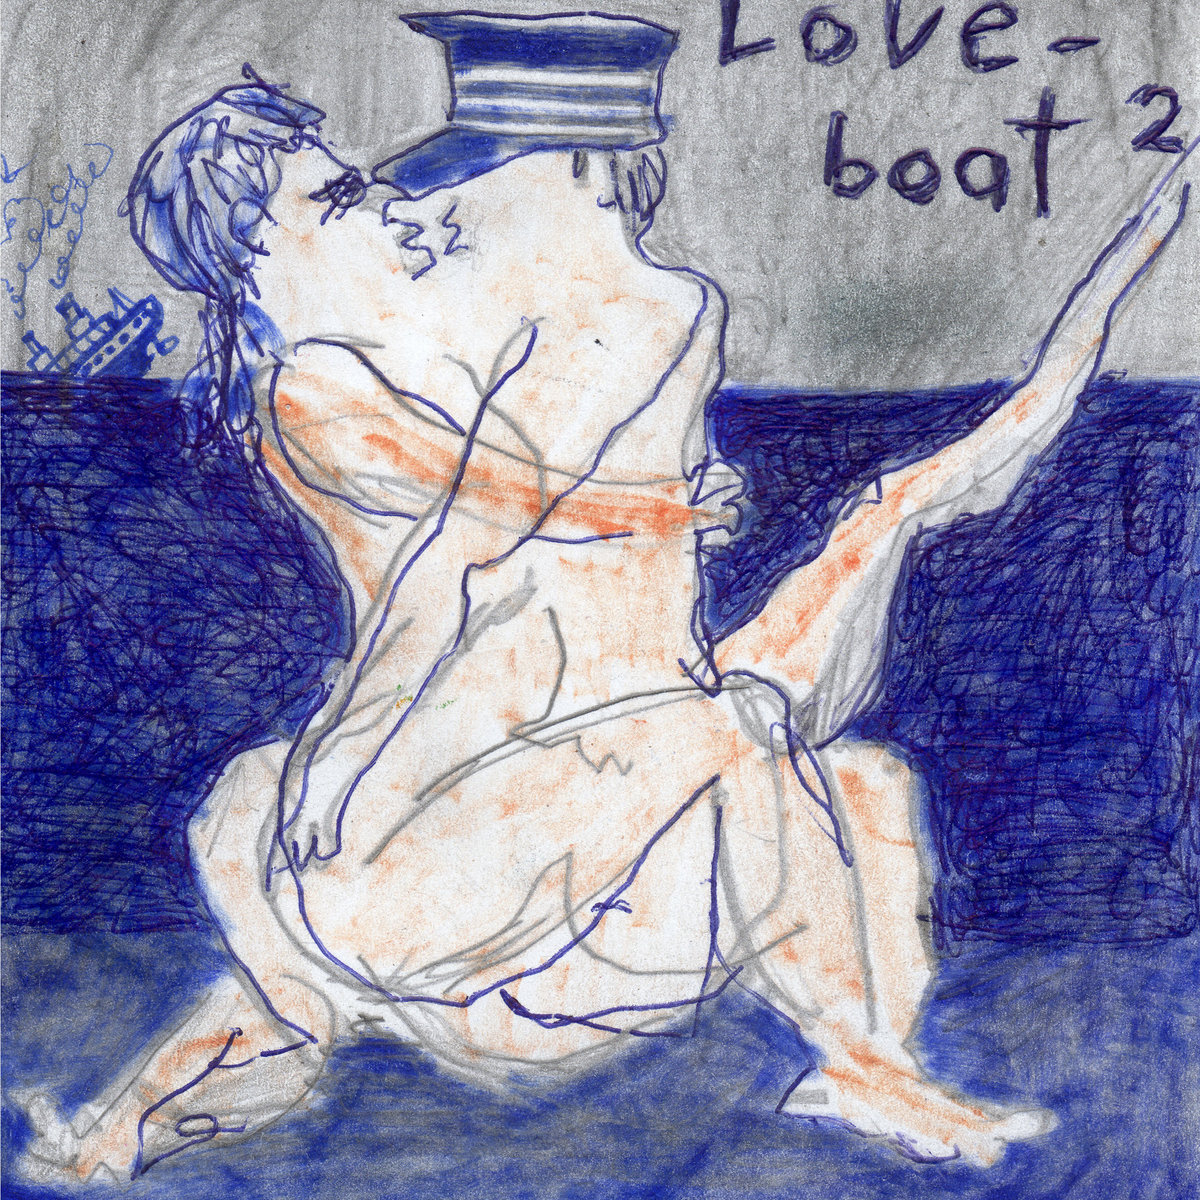 Love Boat 2